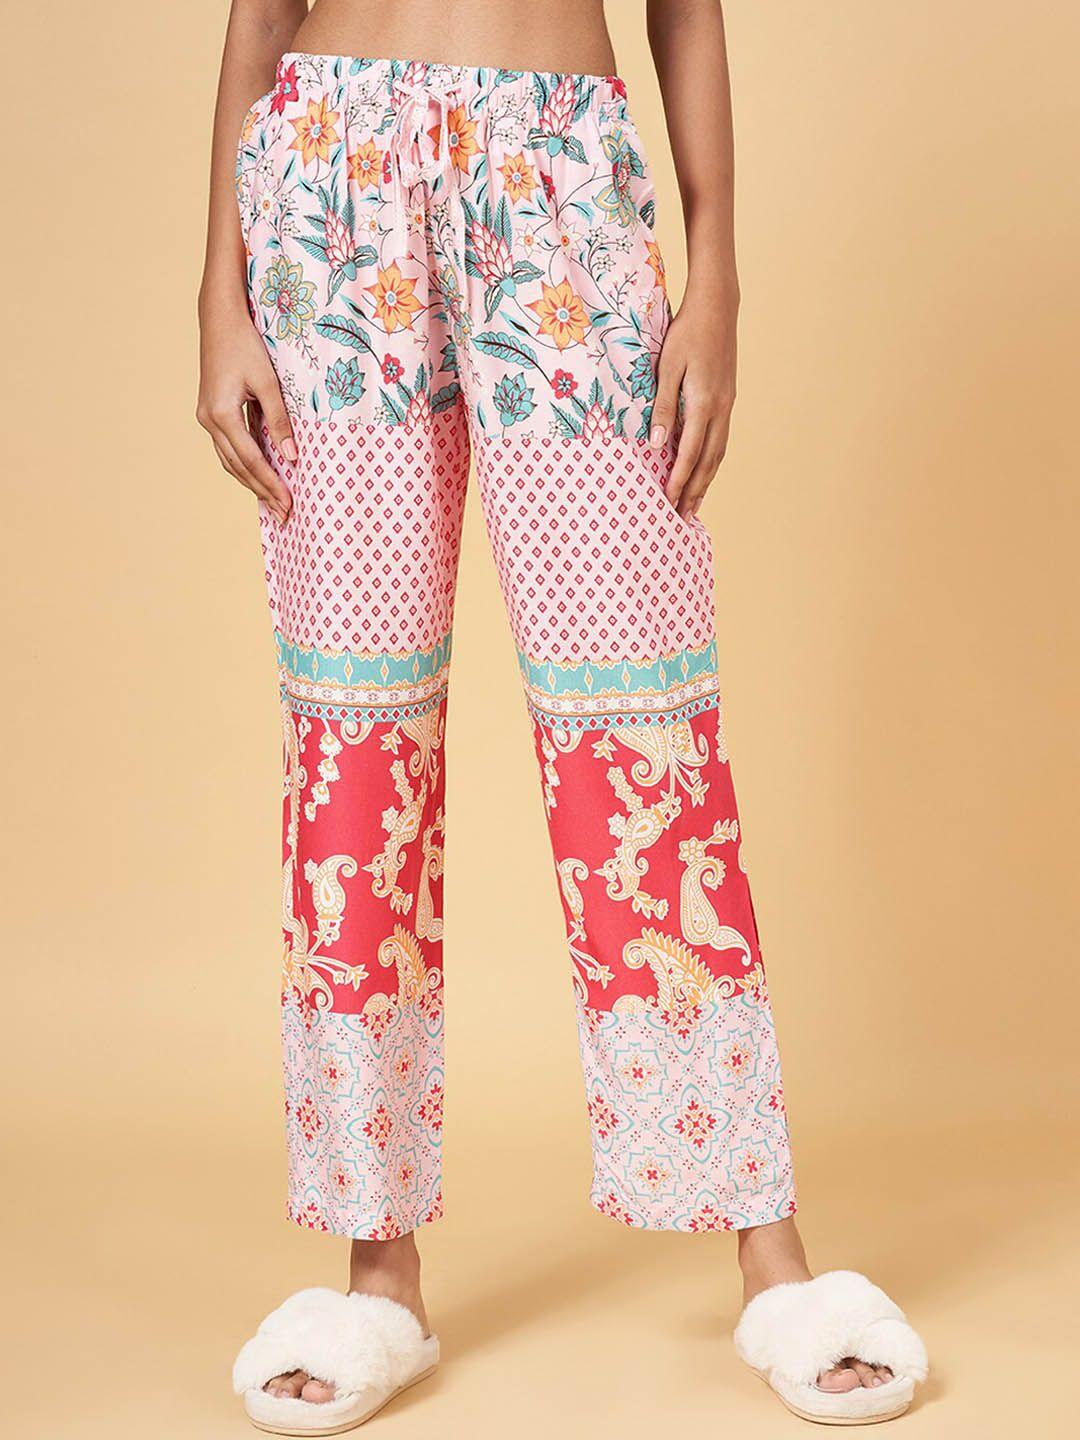 dreamz by pantaloons women printed lounge pants